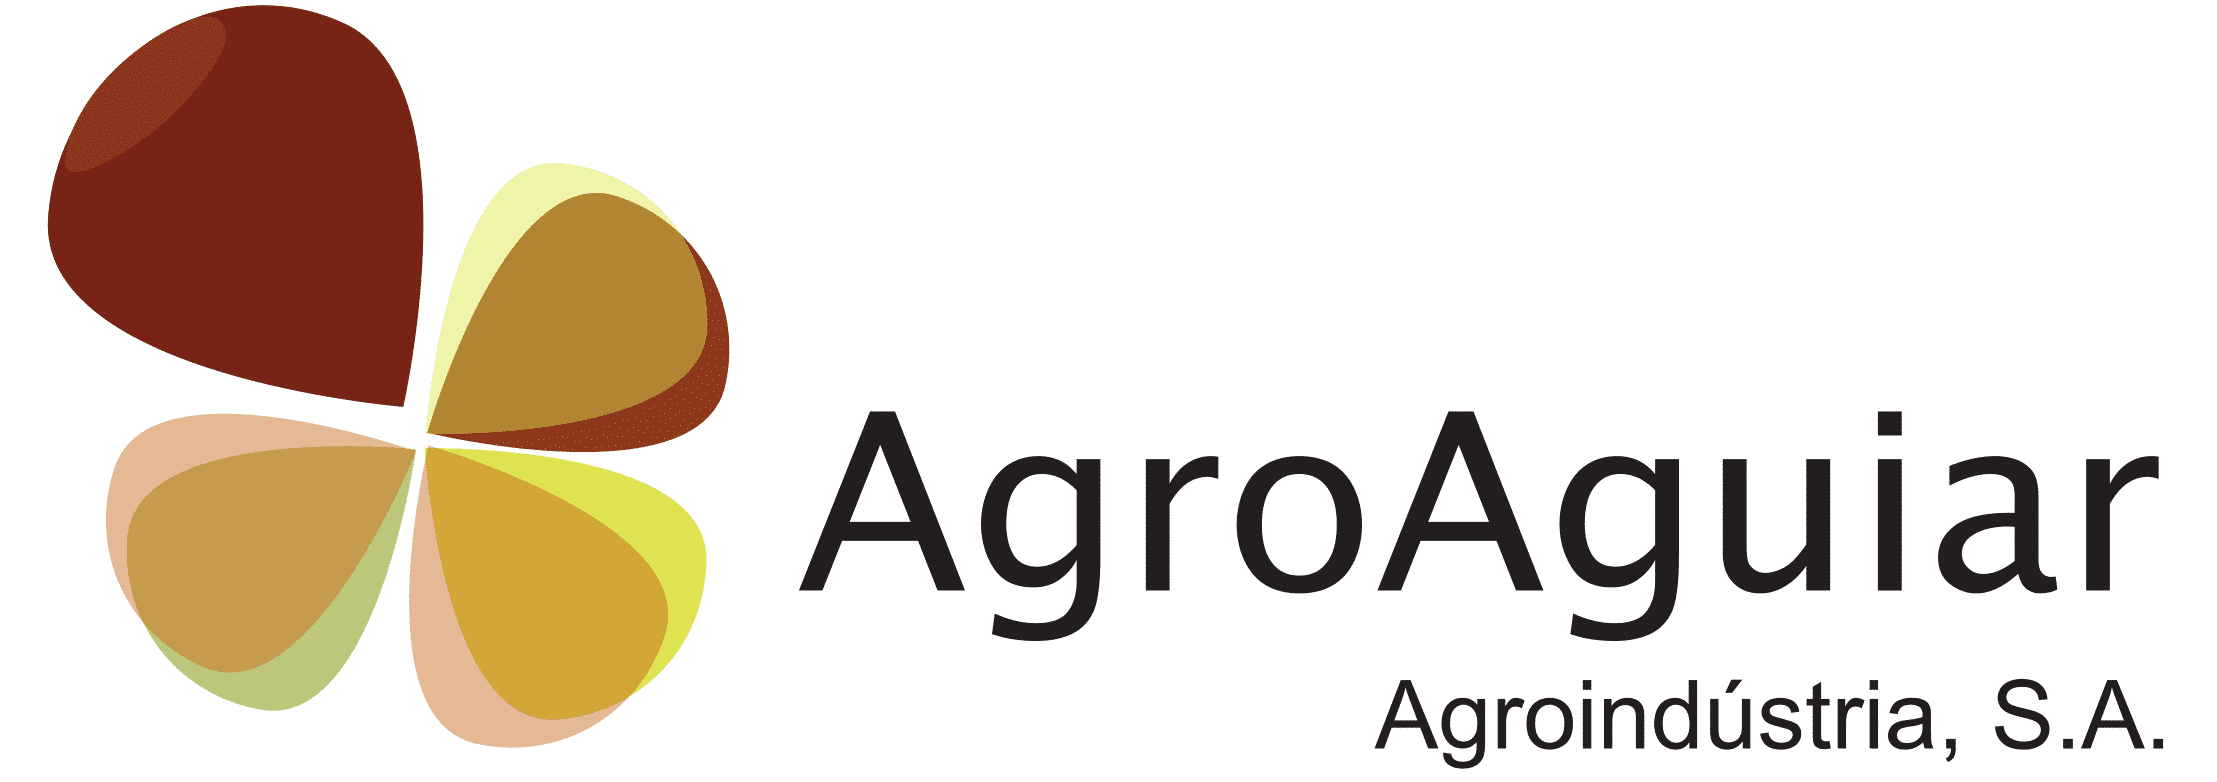 AgroAguiar - Agroindustria S.A.